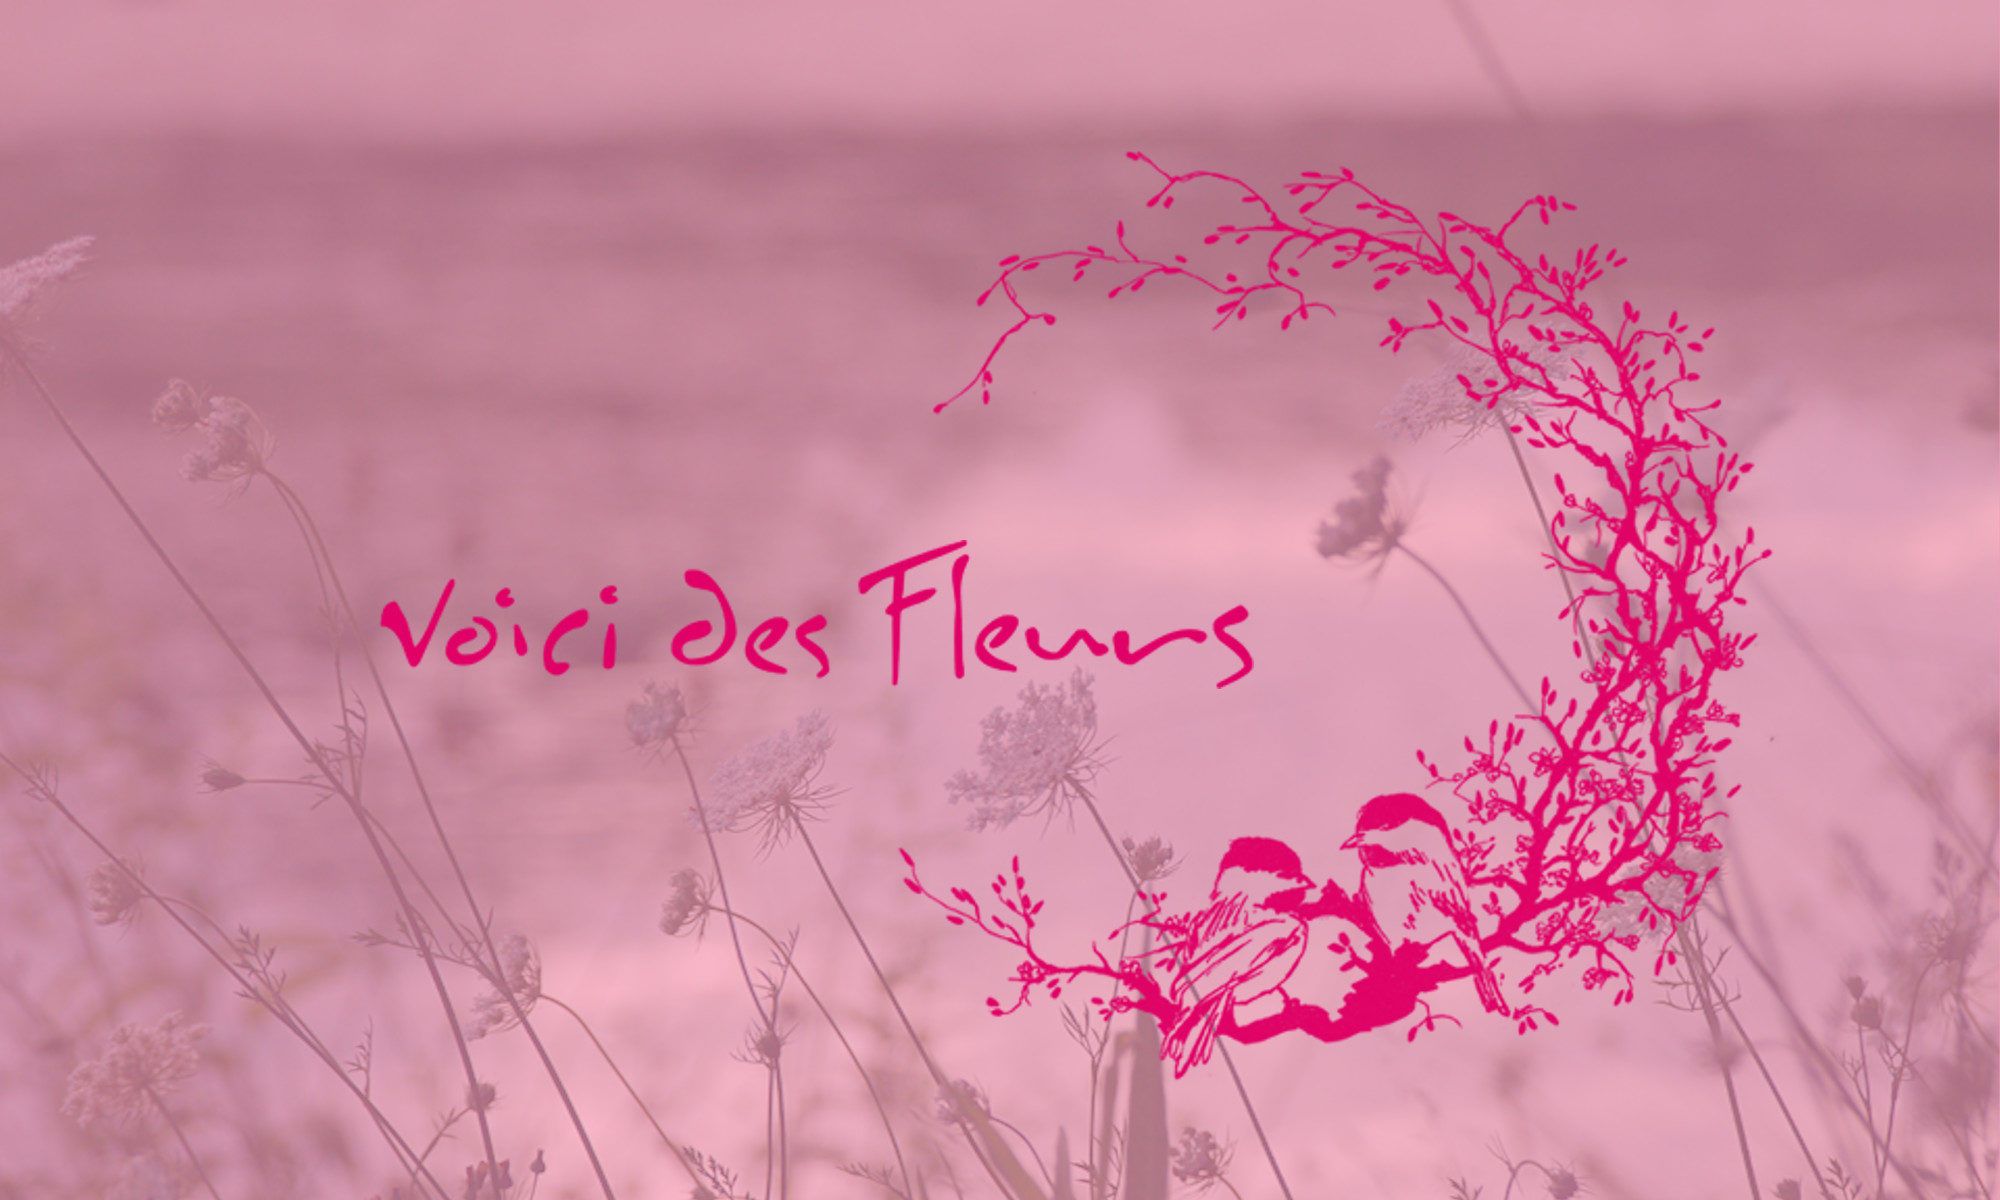 Voici Des Fleurs Francois Defosse